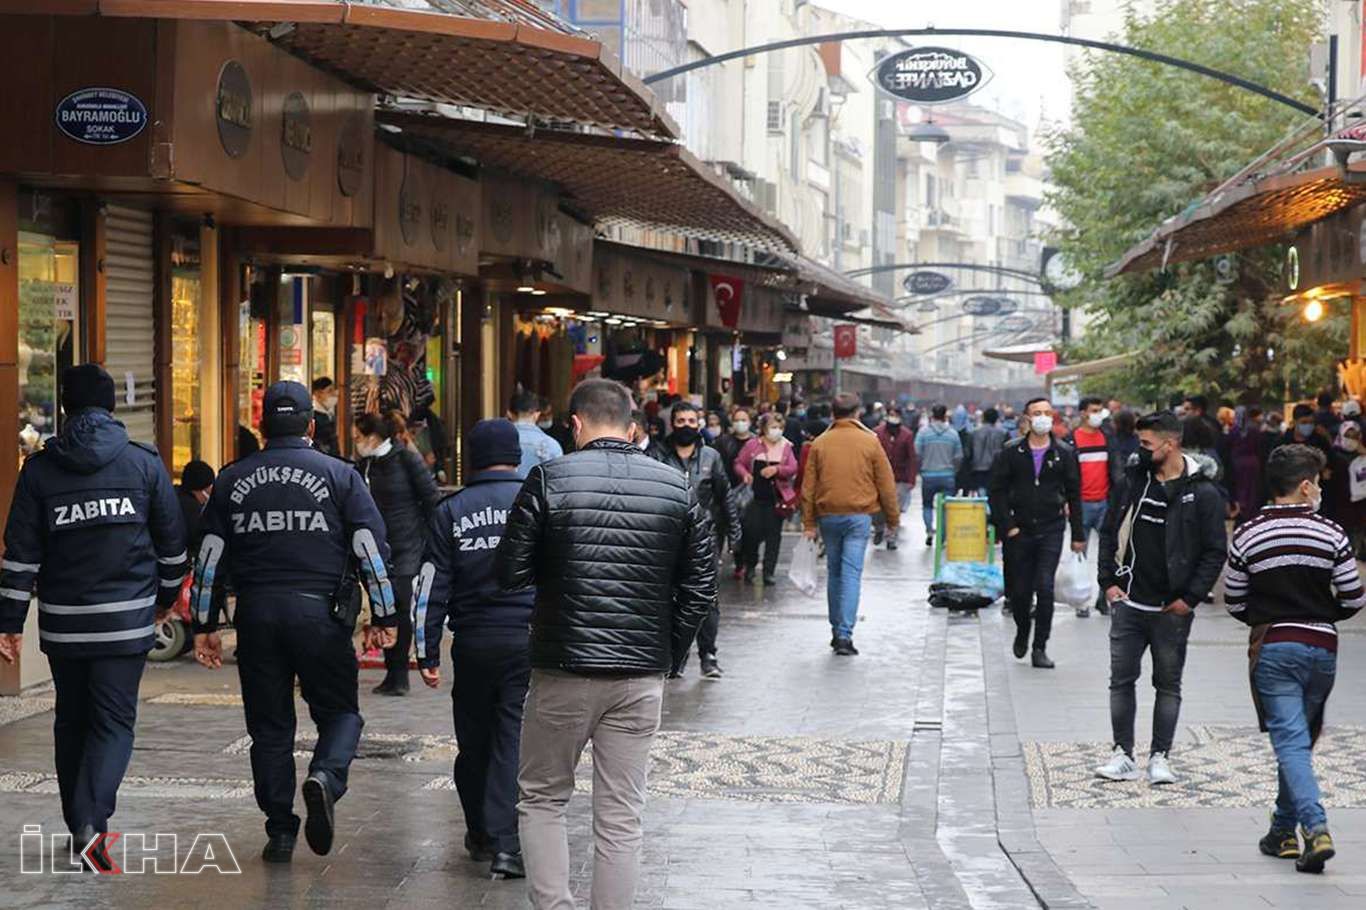 Gaziantep'te Covid-19 kurallarını ihlal eden 415 kişiye para cezası